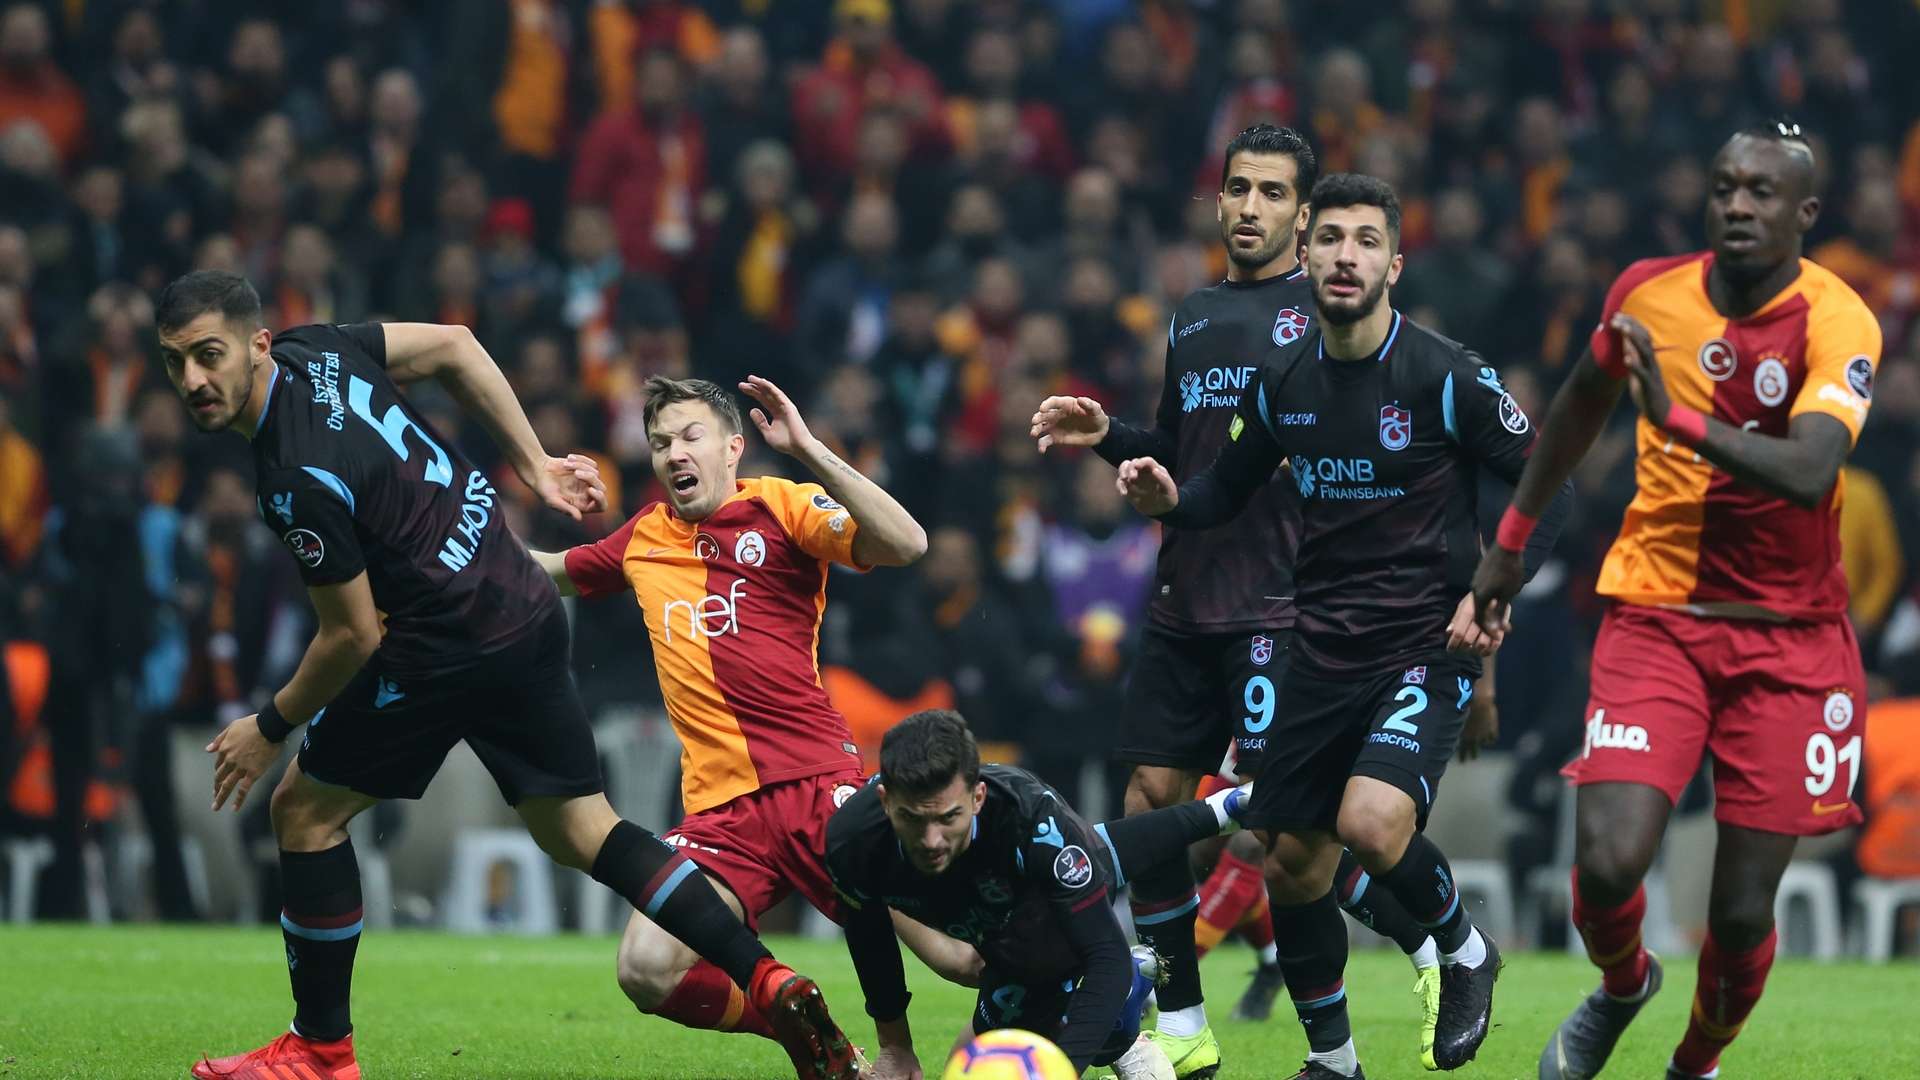 Galatasaray Trabzonspor 2102019